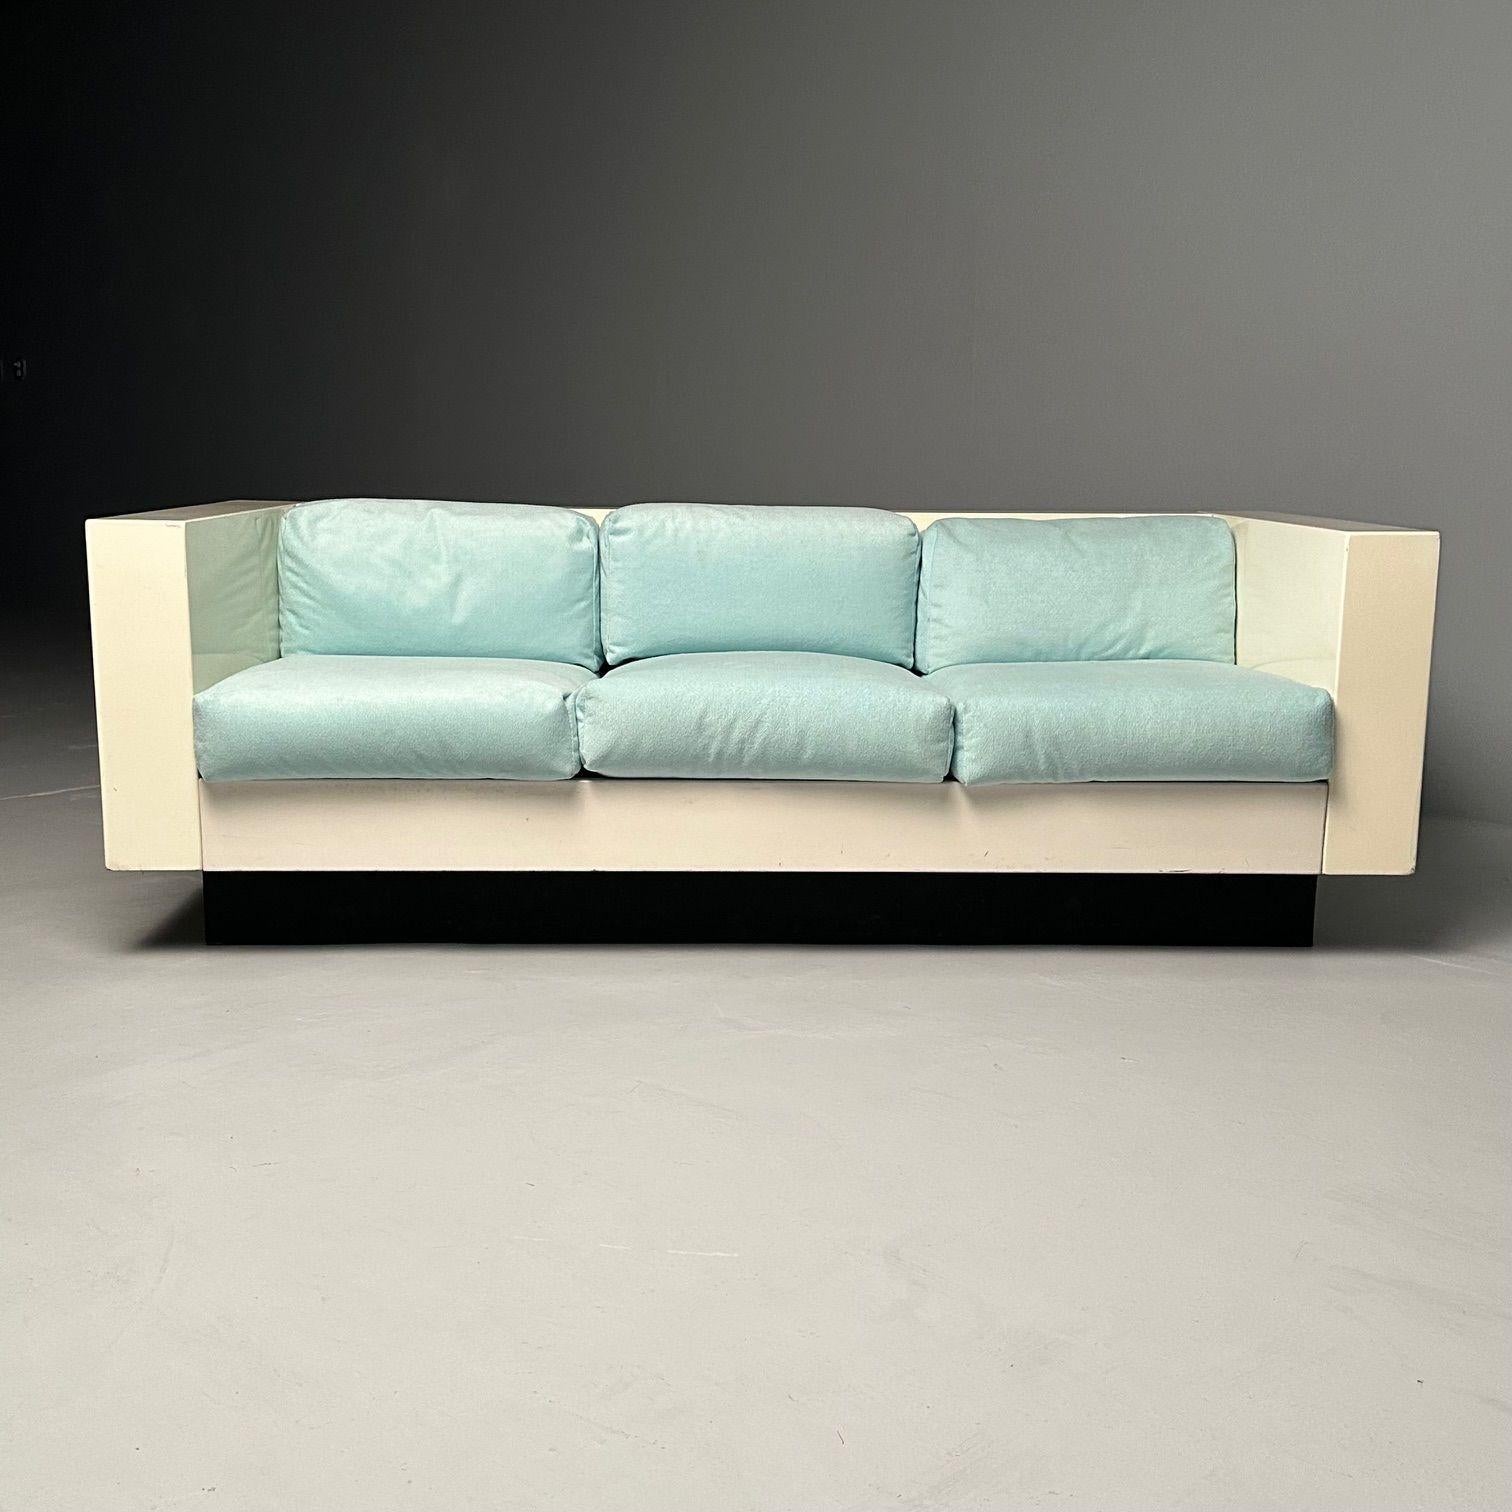 Massimo Vignelli, Poltronova, Mid-Century Modern Saratoga Sofas, Lacquer, Fabric 2